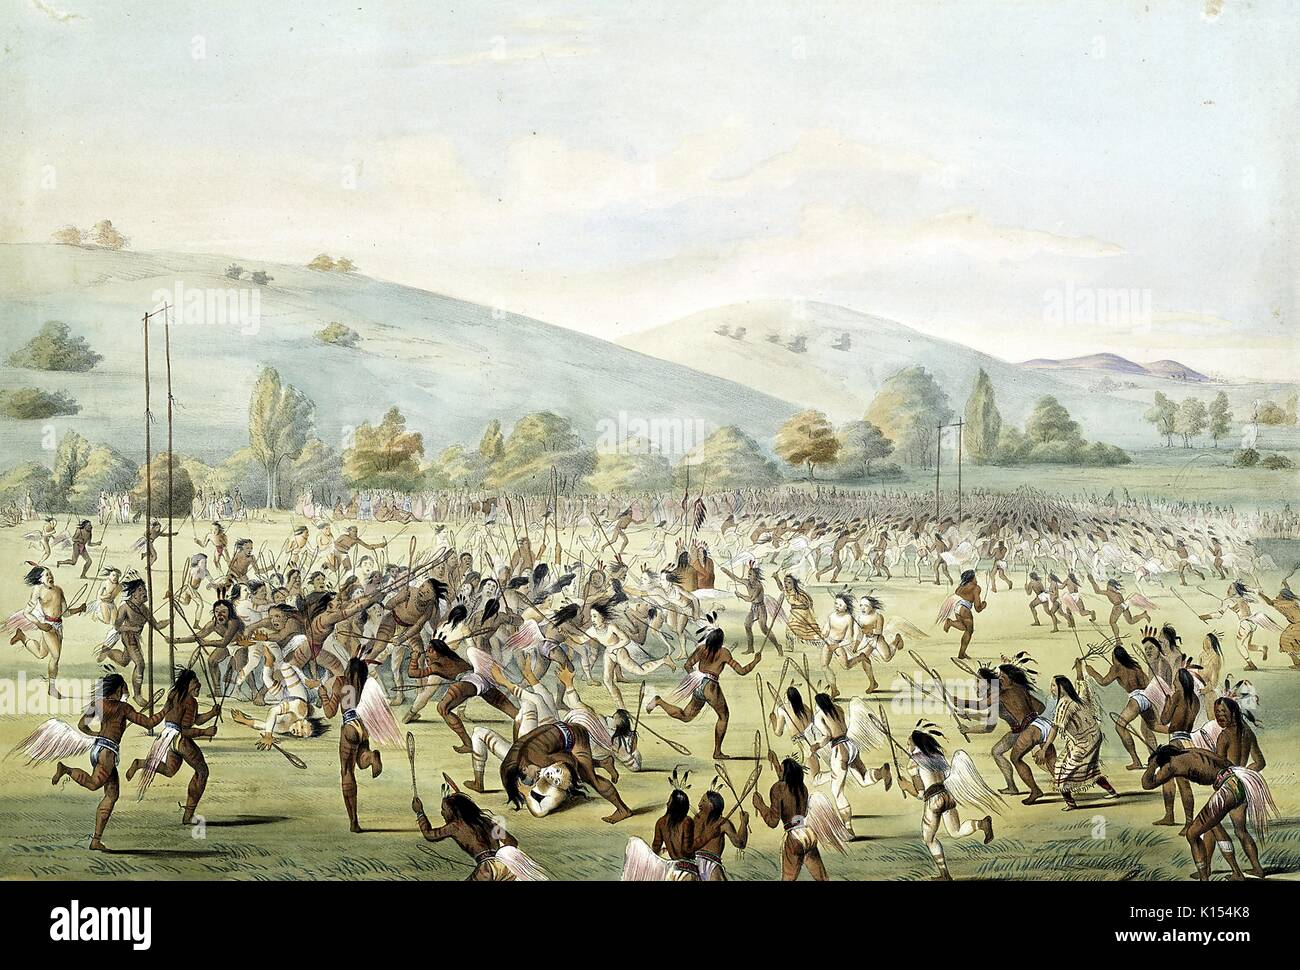 Native Americans in einer großen Gruppe spielen eine frühe Version des Spiels lacrosse, 1888. Von der New York Public Library. Stockfoto